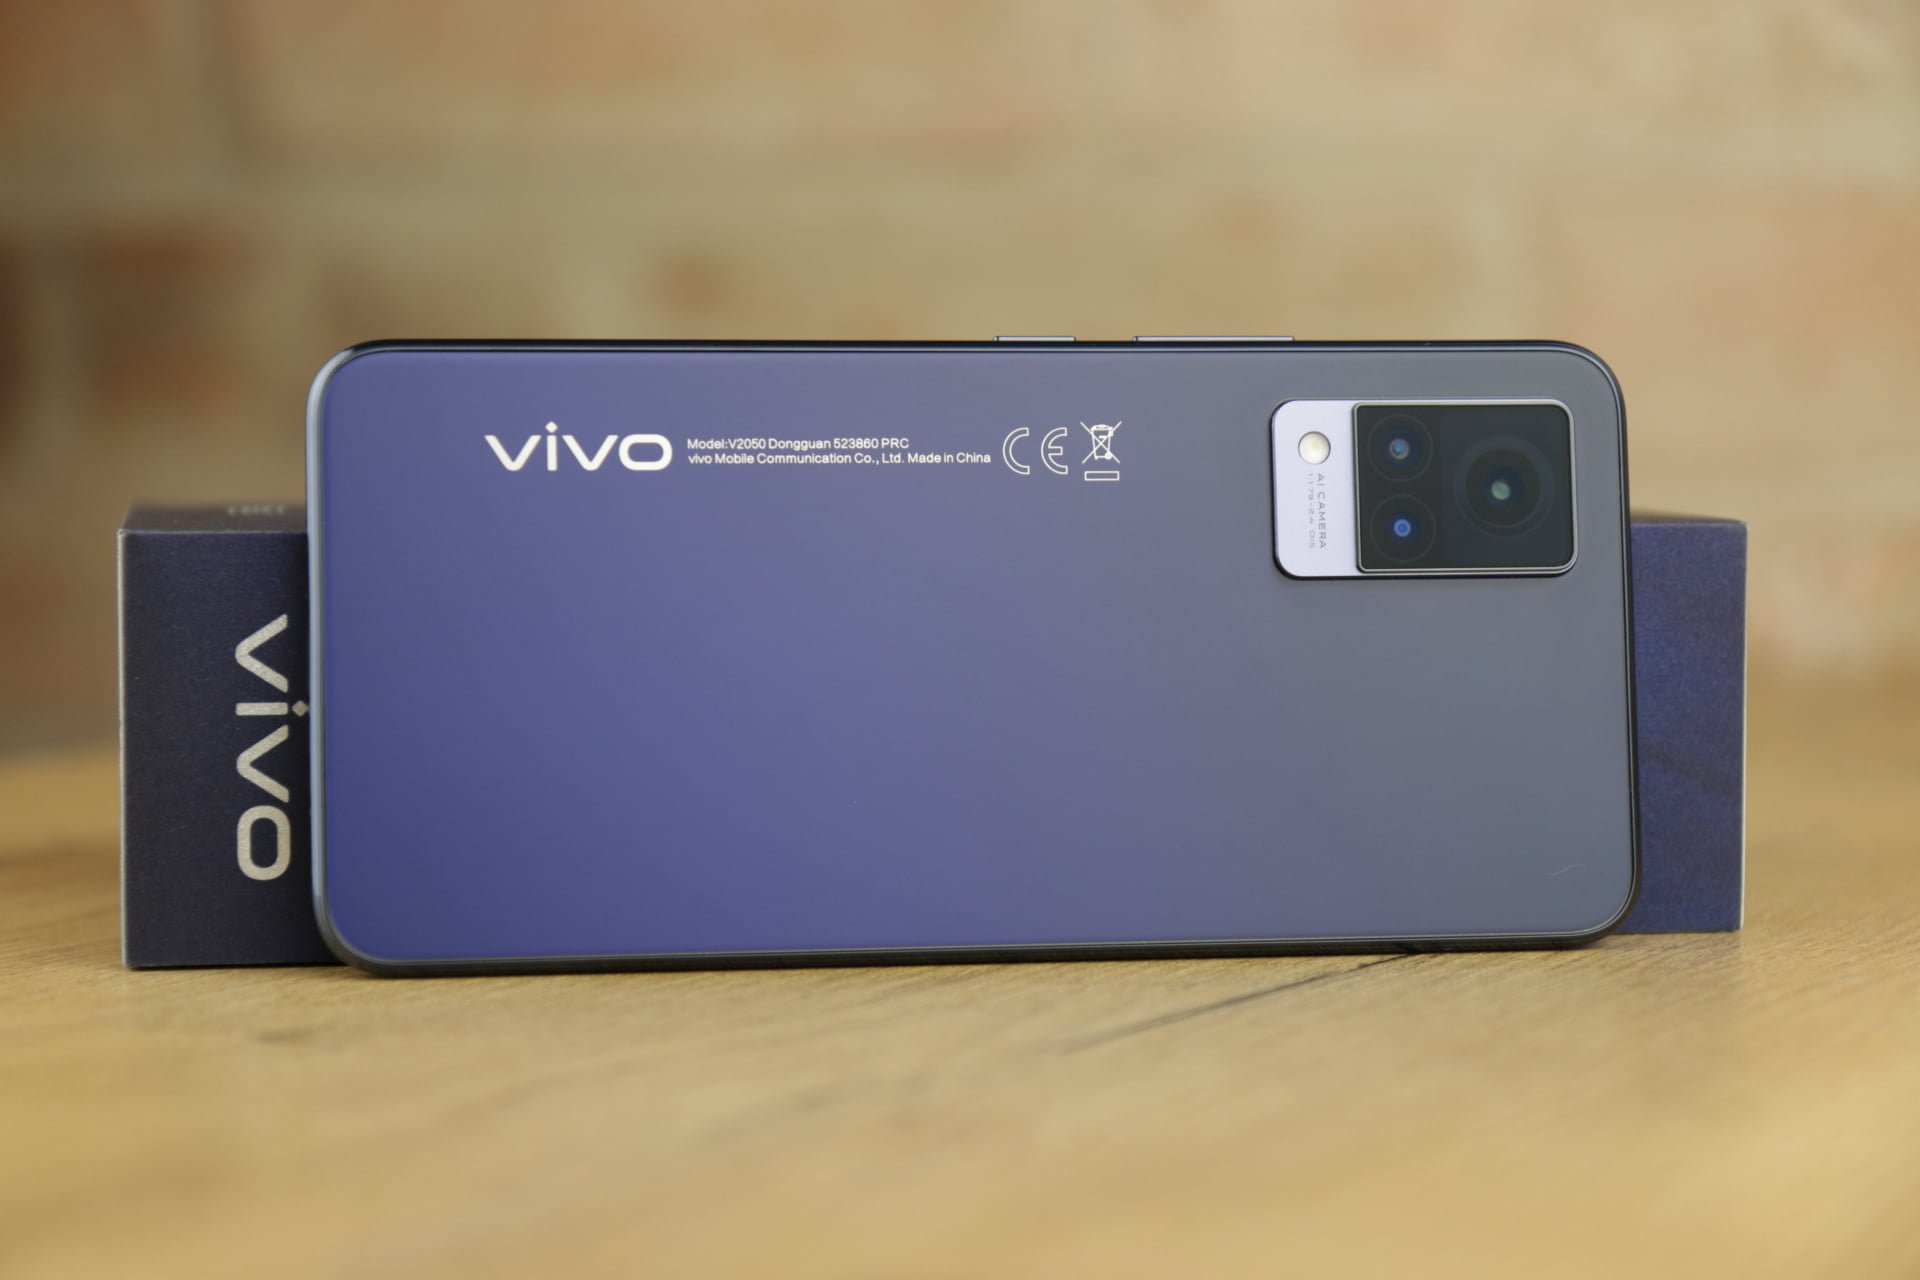 Vivo V21 5G recenzja test